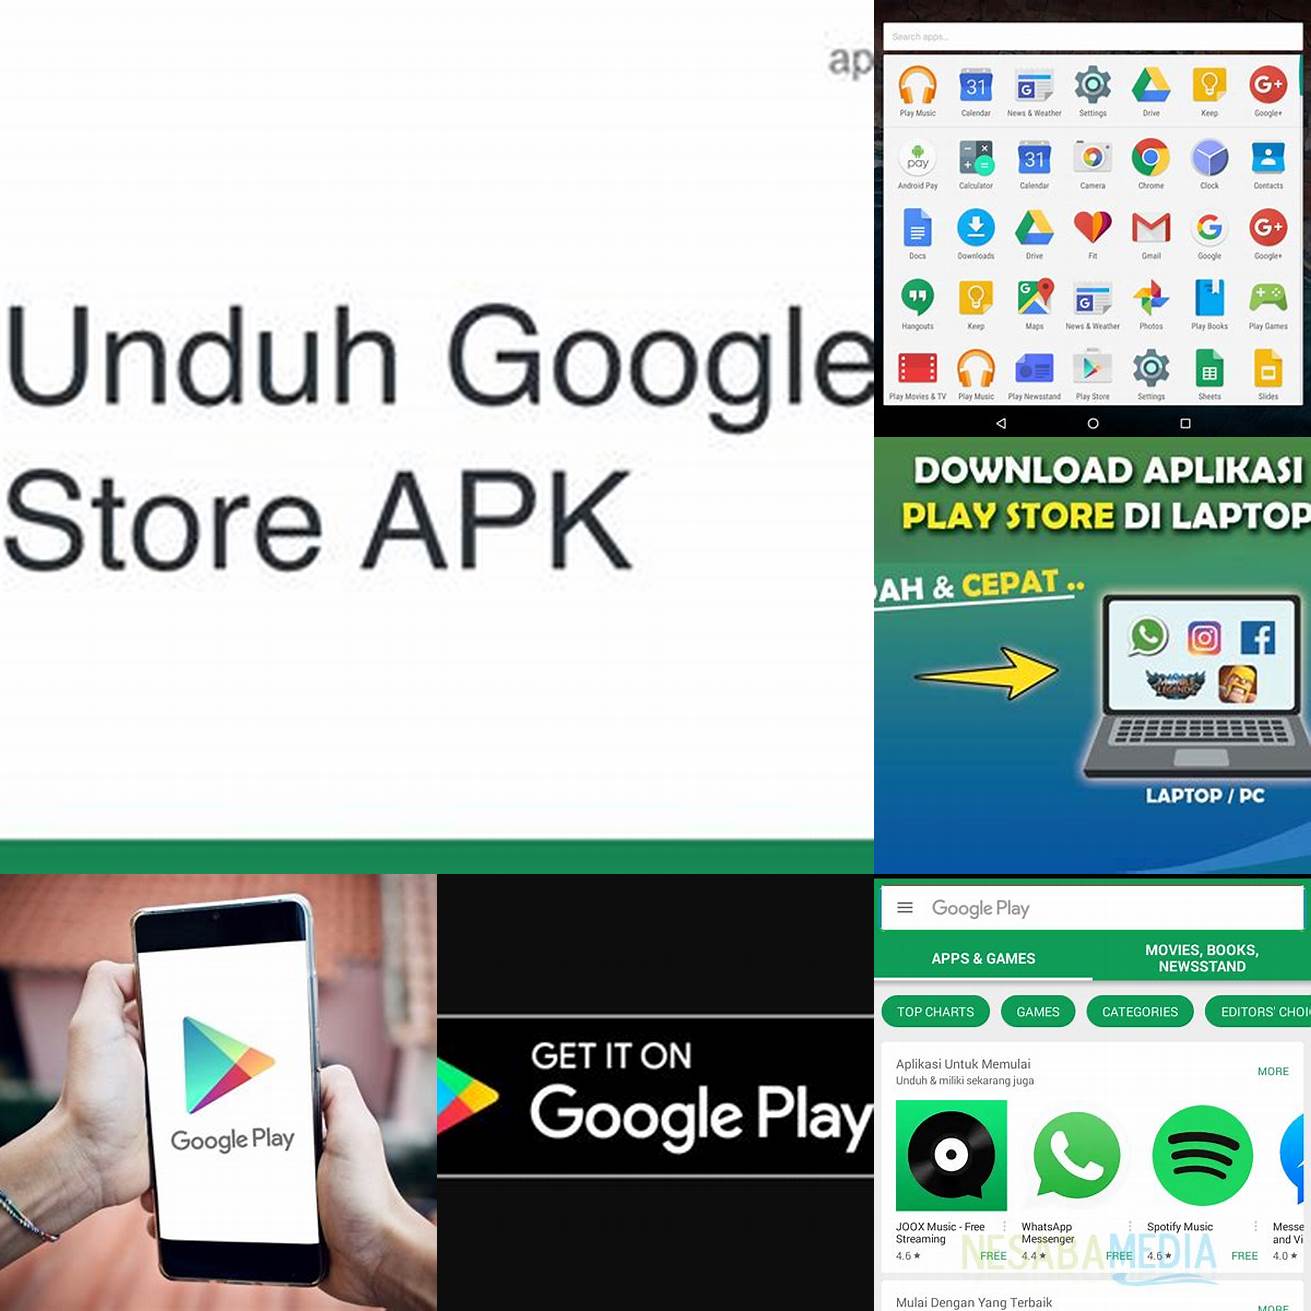 Cari aplikasi yang ingin kamu unduh di Google Play Store